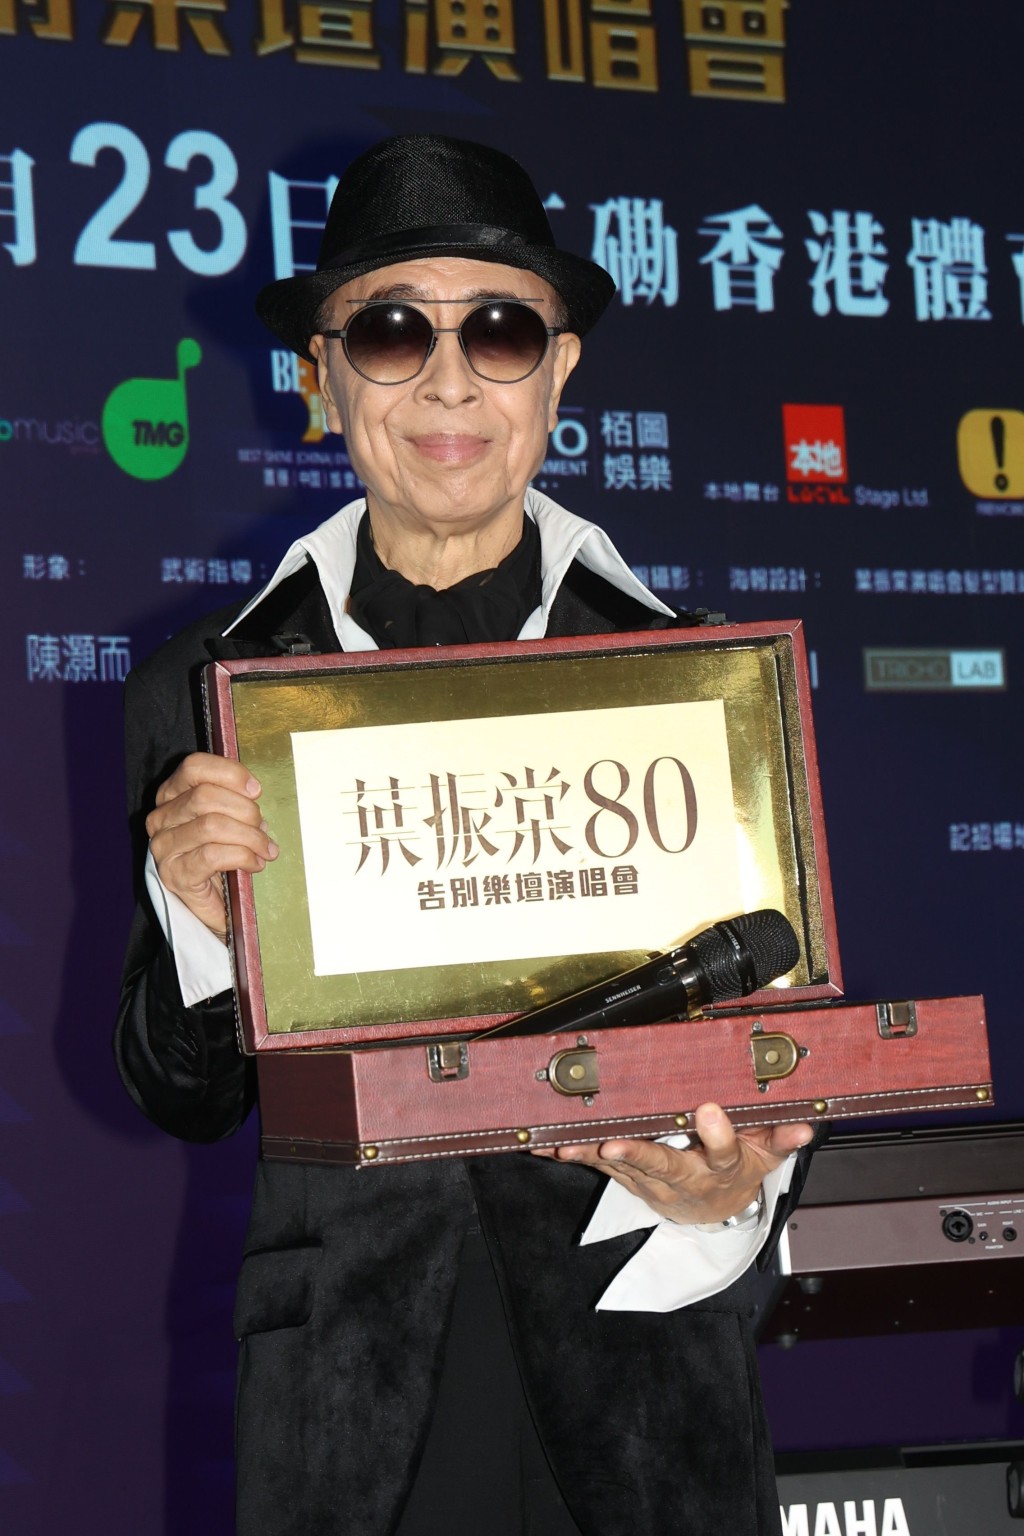 现年80岁的殿堂级歌手叶振棠，将于本月23日举行首个红馆演唱会「叶振棠 80告别乐坛演唱会」。